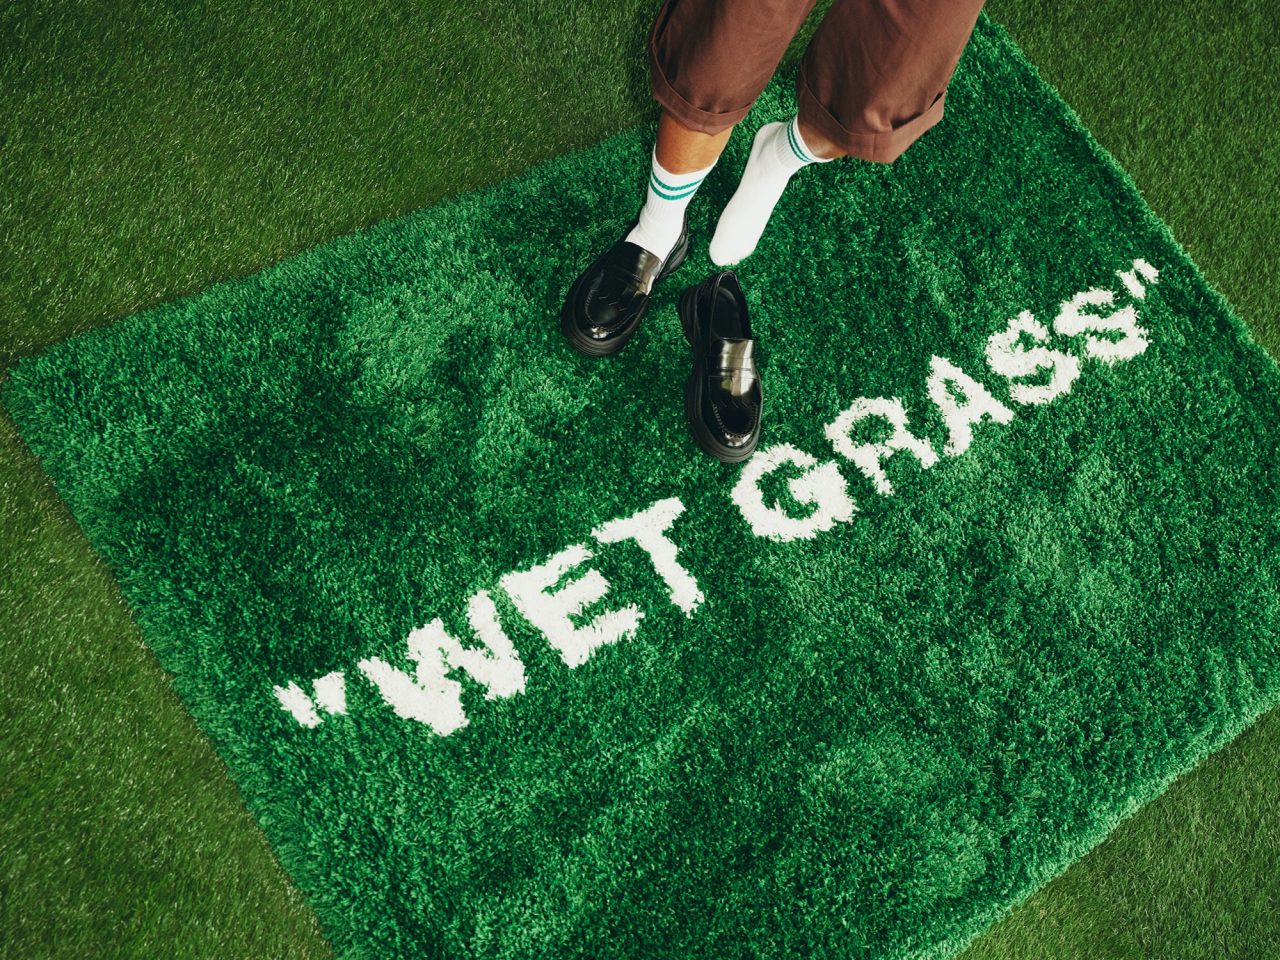 Person i kortbyxor, vita knästrumpor och svarta skor står på en grön ryamatta med vit text: WET GRASS.